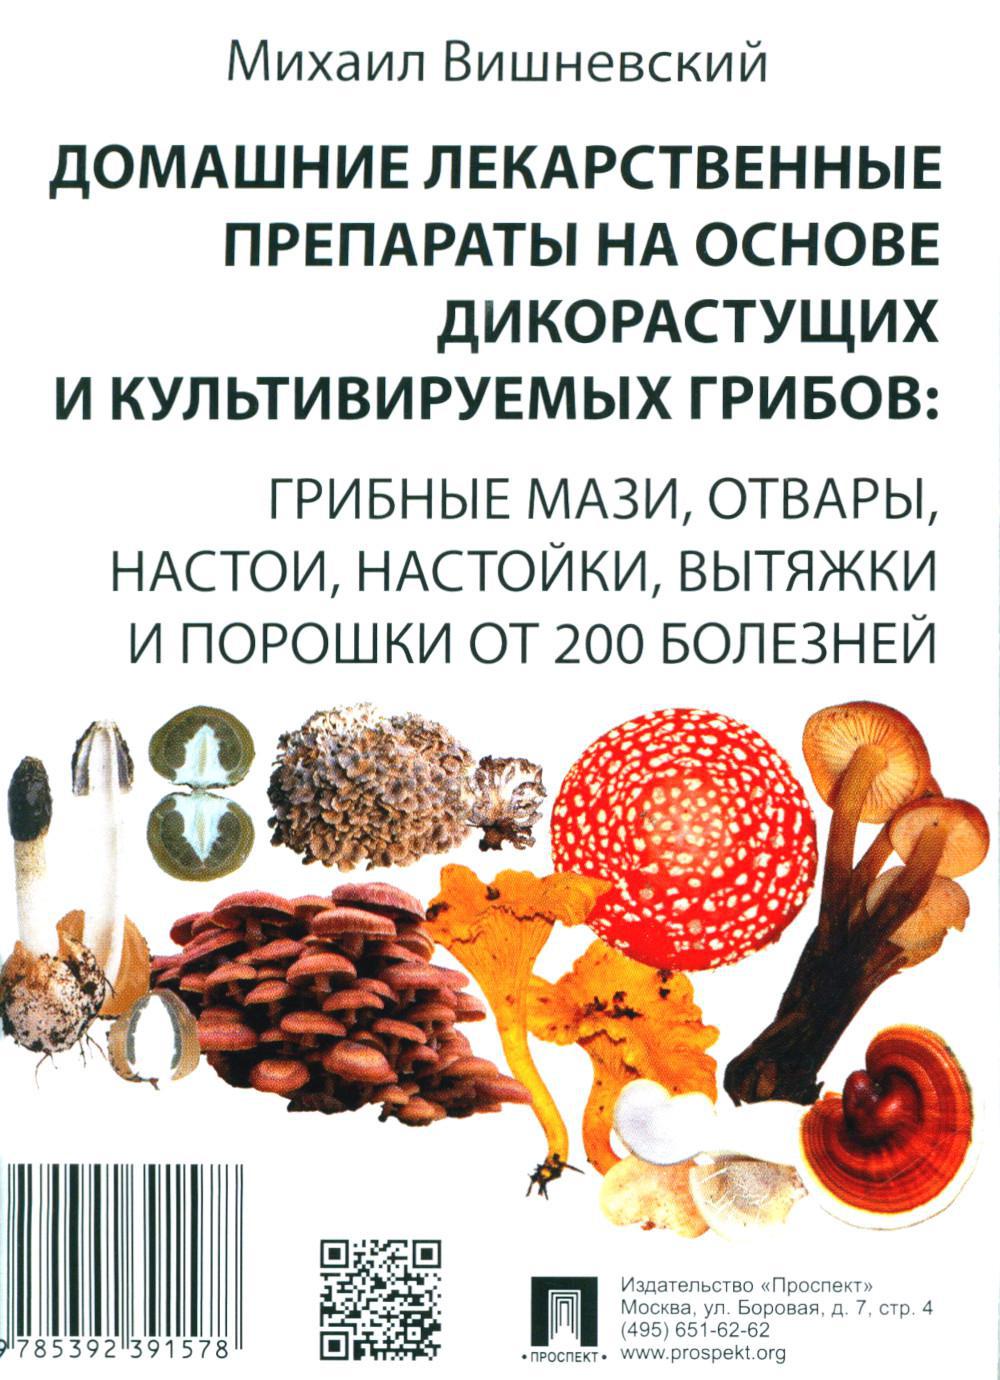 Домашние лекарственные препараты на основе дикорастущих и культивируемых грибов: грибные мази, отвары, настои, настойки, вытяжки и порошки от 200 боле